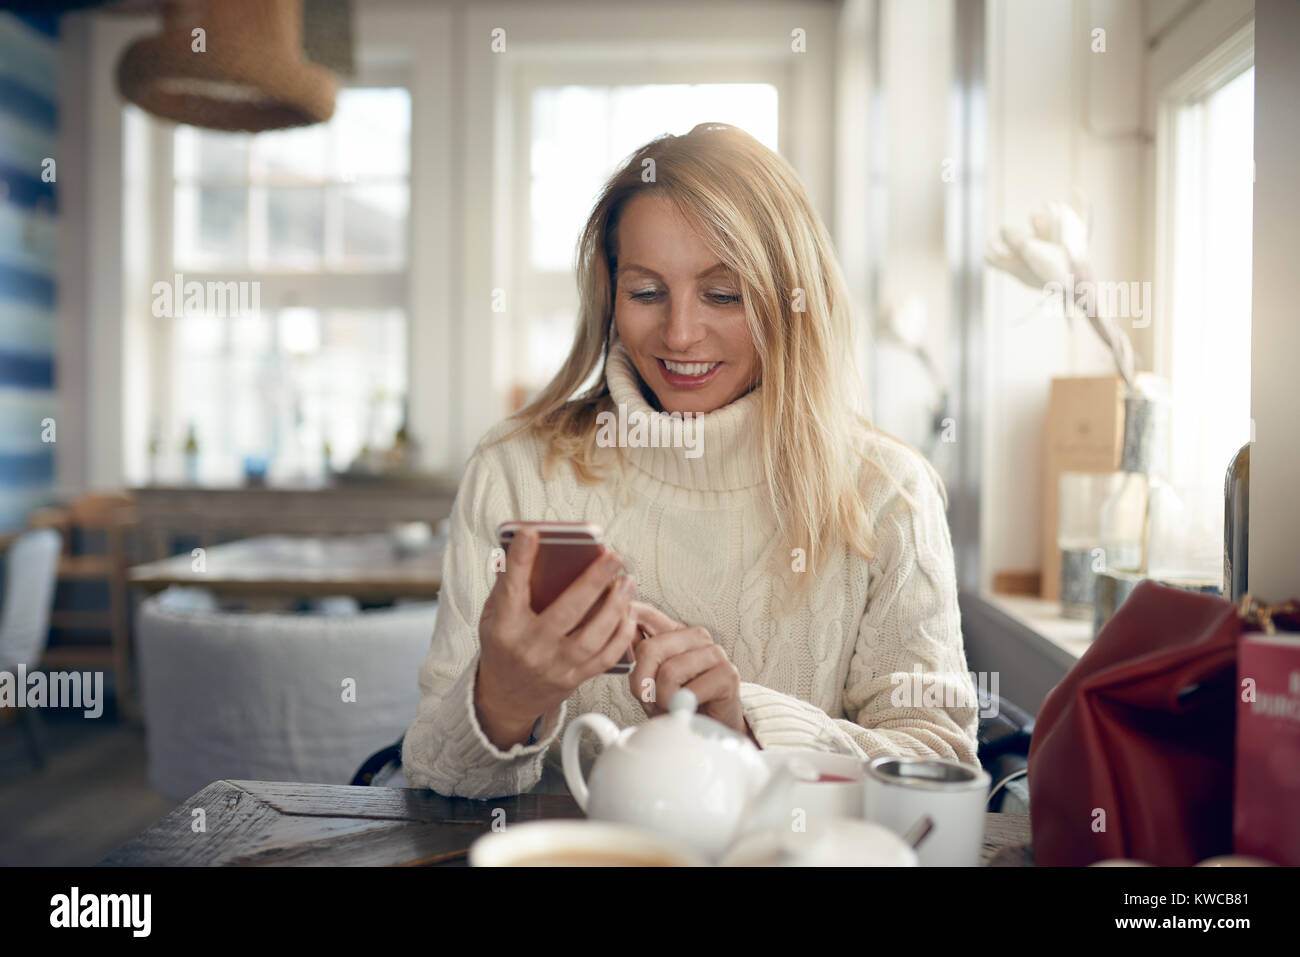 Portrait d'une belle blonde woman smiling lors de la navigation sur internet ou de l'envoi de messages sur le réseau social sur son téléphone portable à la maison Banque D'Images